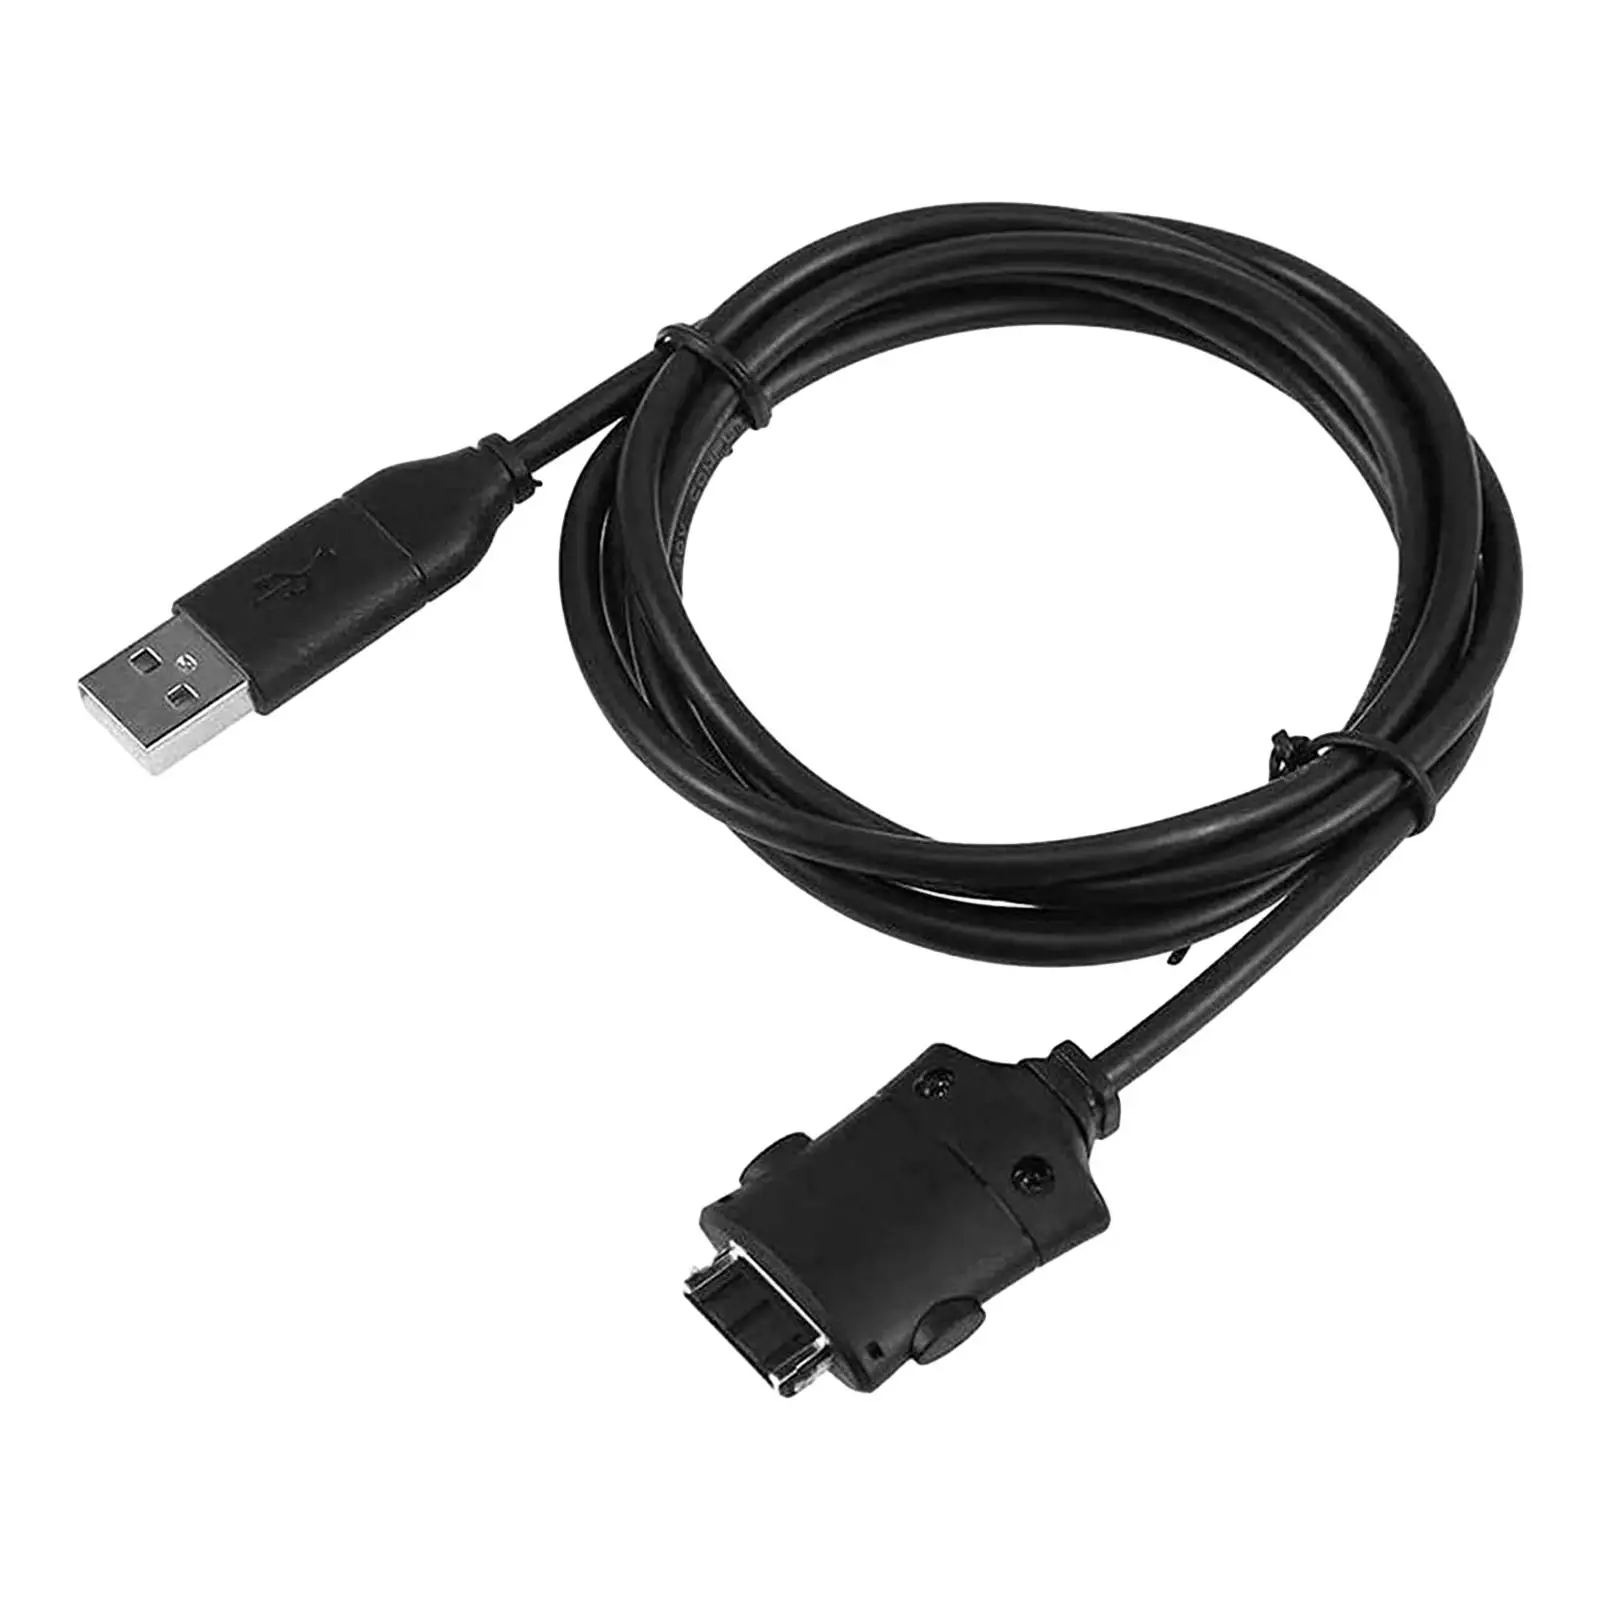 Suc-c2 USB Кабель Для Зарядки Данных Шнур Простой в Использовании Аксессуар Прочный Сменный Шнур для Передачи данных для Цифровой Камеры i85 L83T L70 i6 - 3